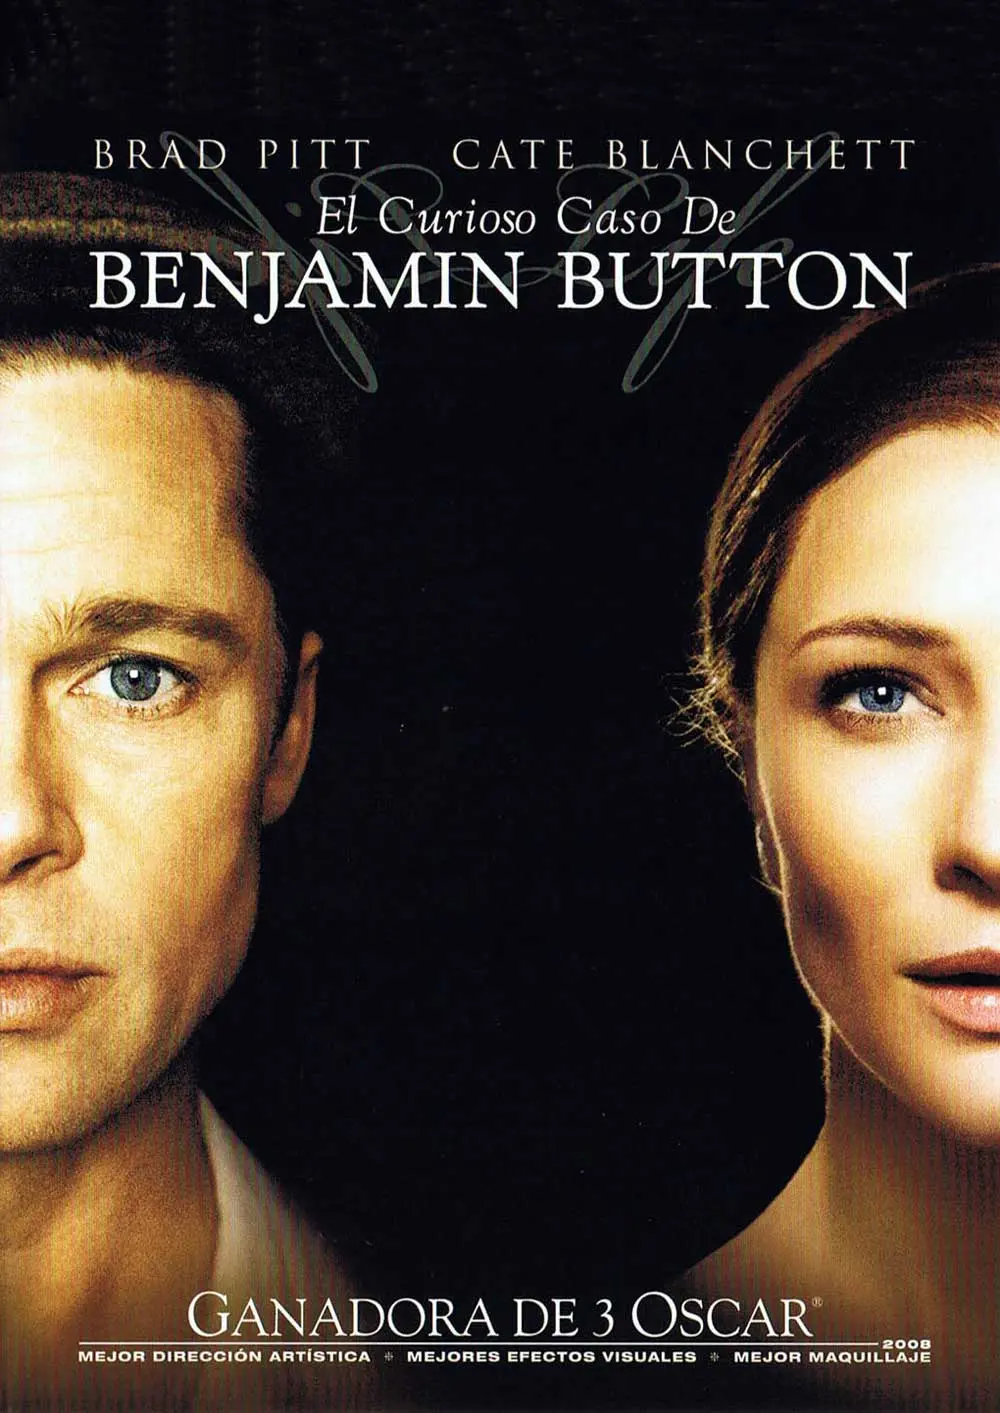 el curioso caso de benjamin button resumen - Cuál es el mensaje de la película El curioso caso de Benjamin Button